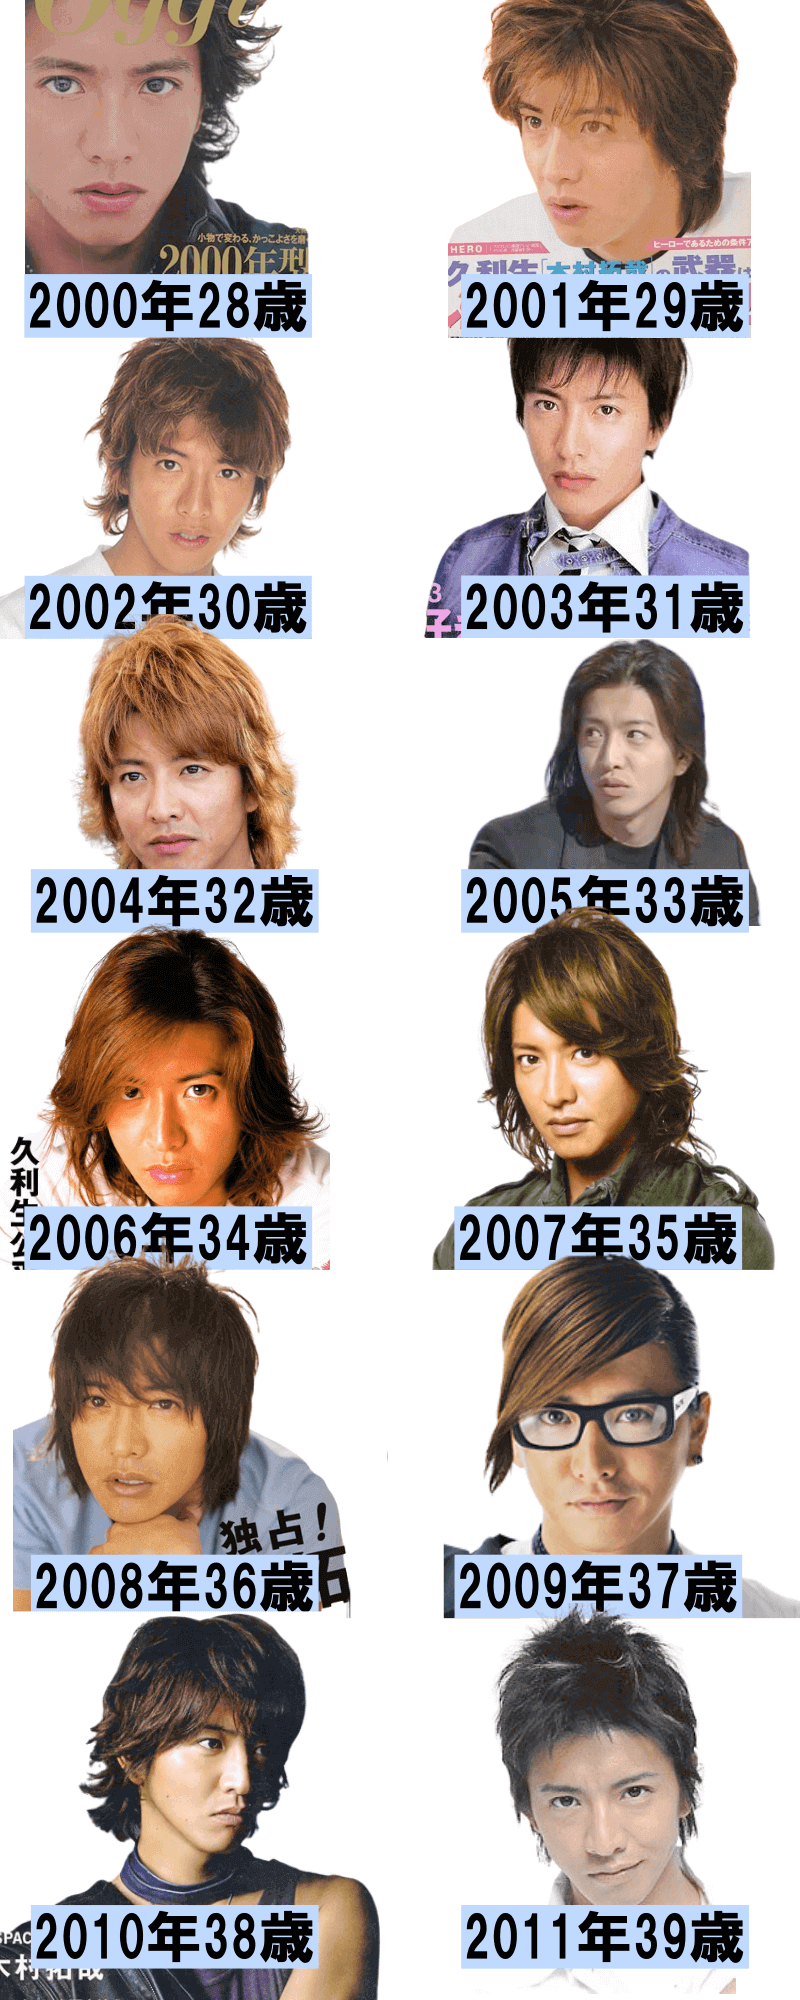 木村拓哉の40歳以前のデビューから若い頃の画像年表2000年～2011年